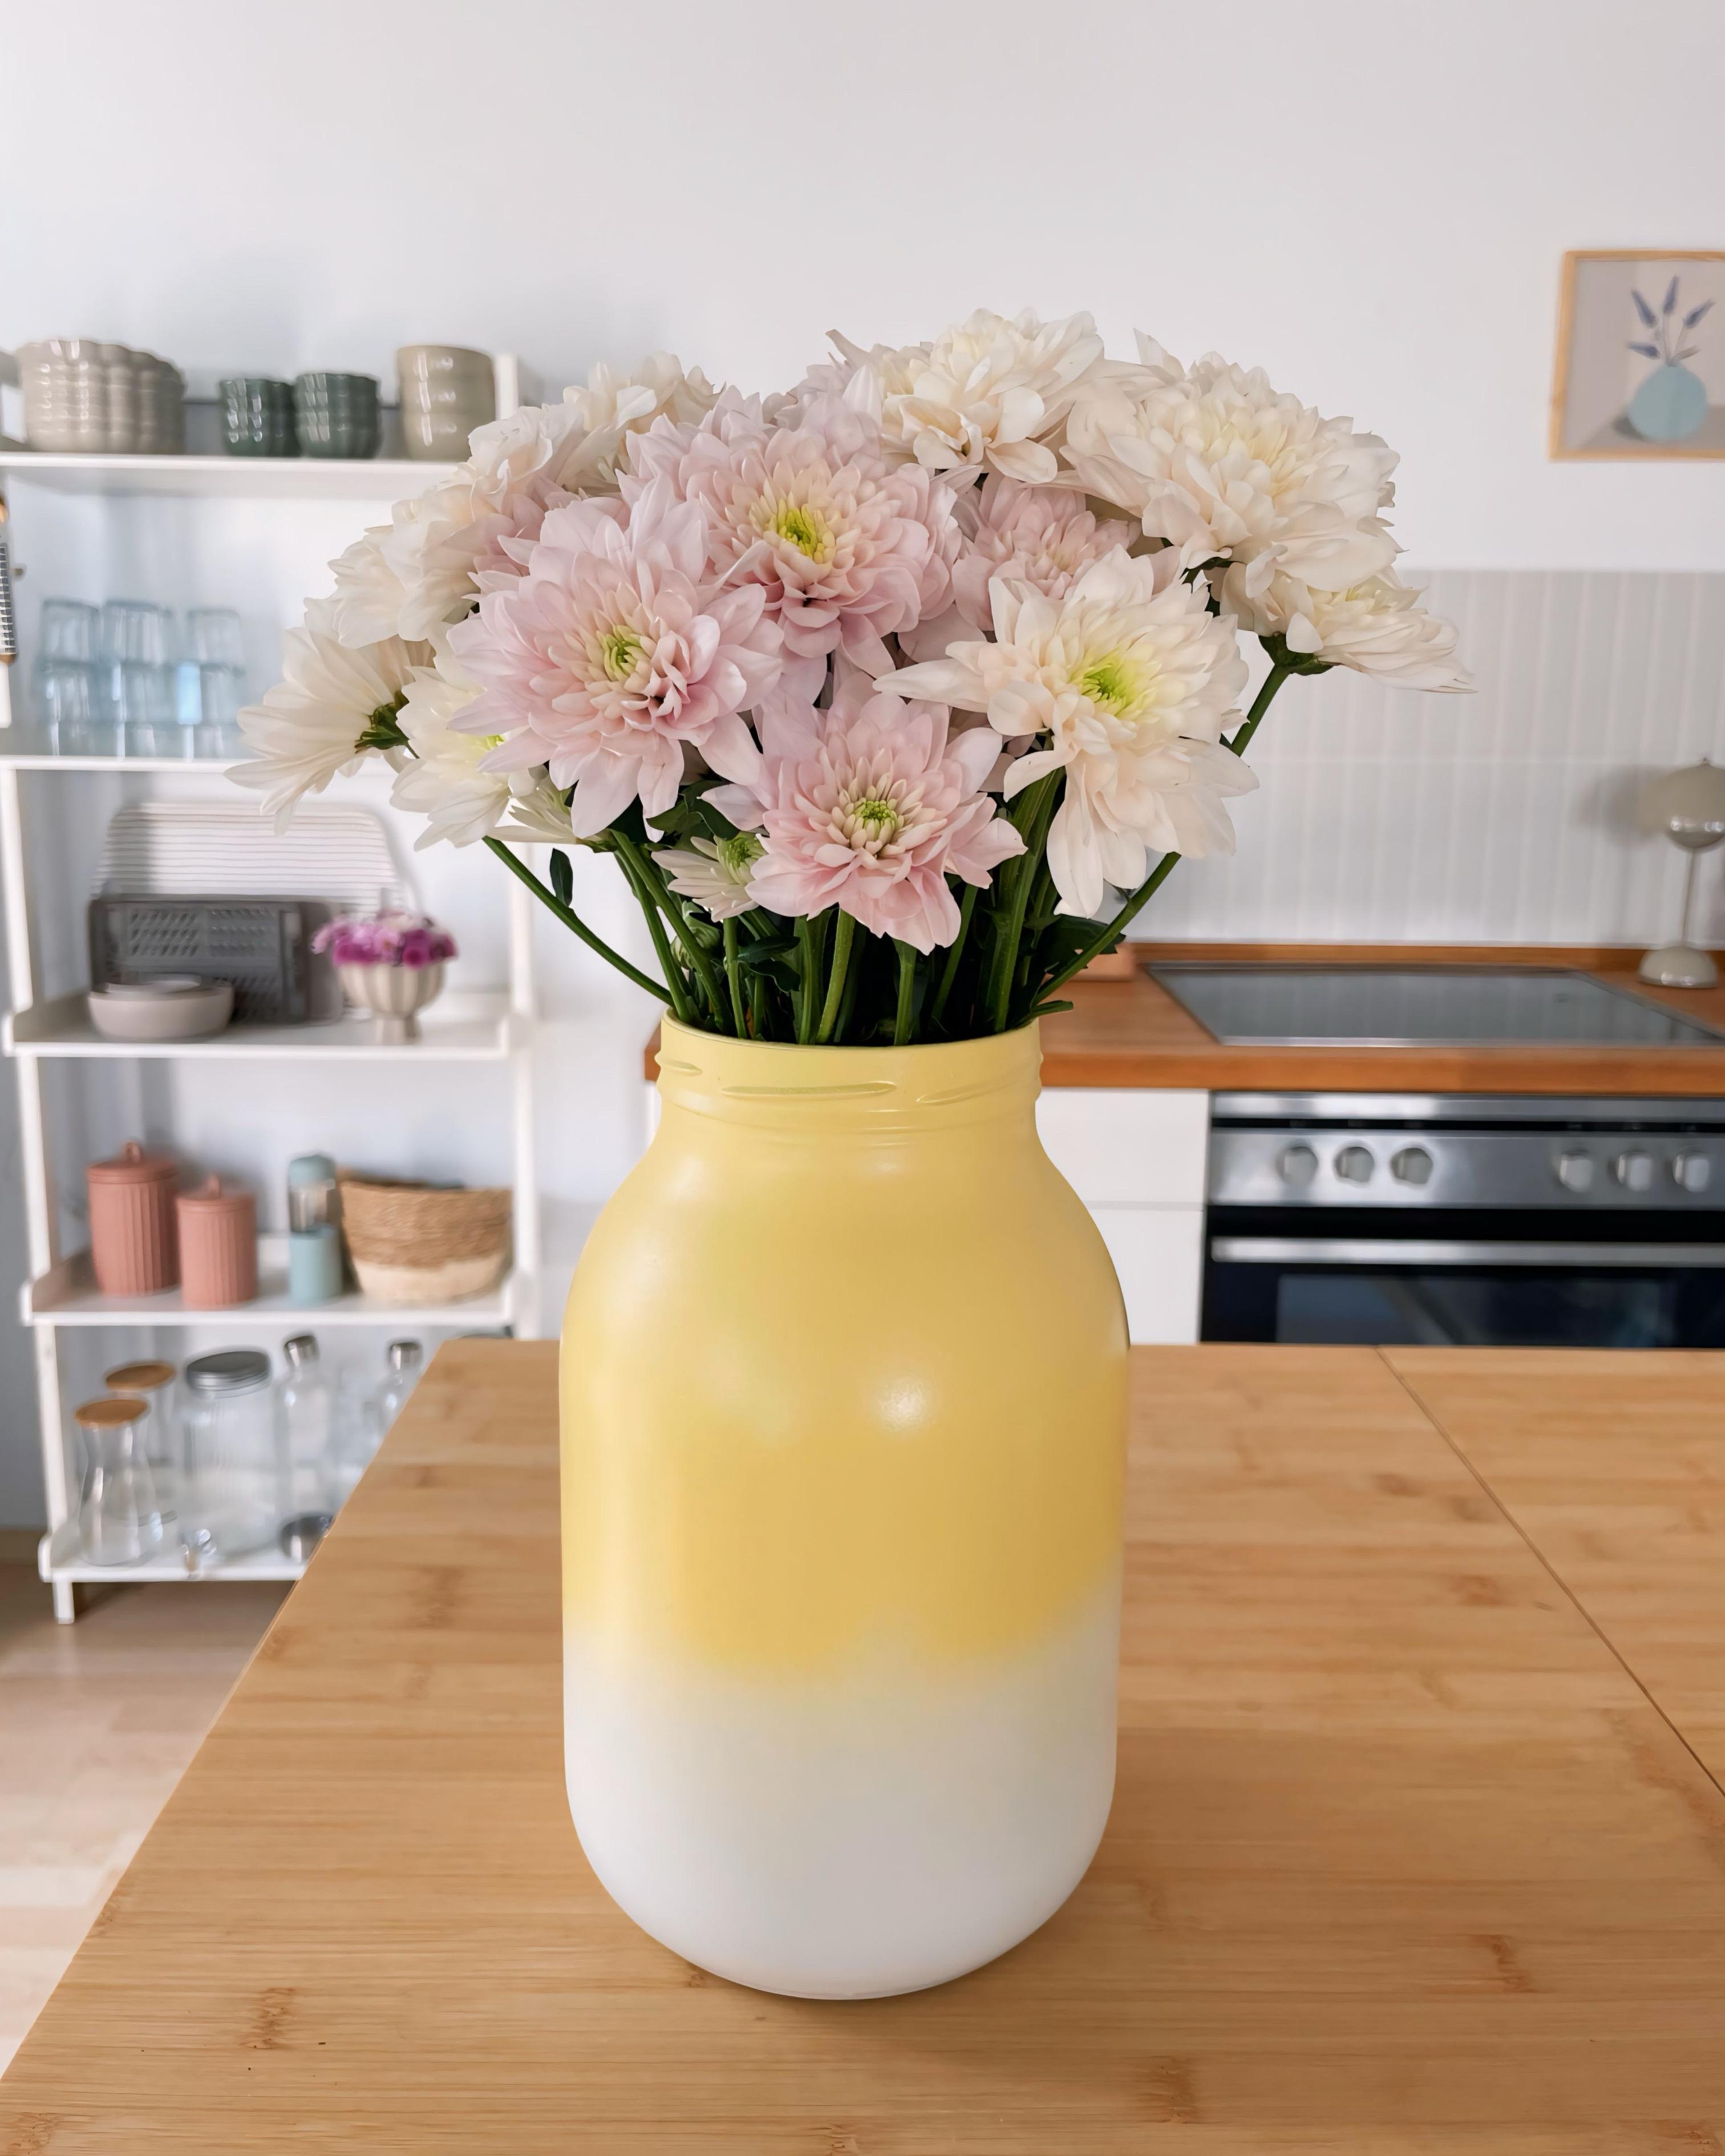 DIY Vase 🫶
#diy#couchliebt#blumen#vasenliebe